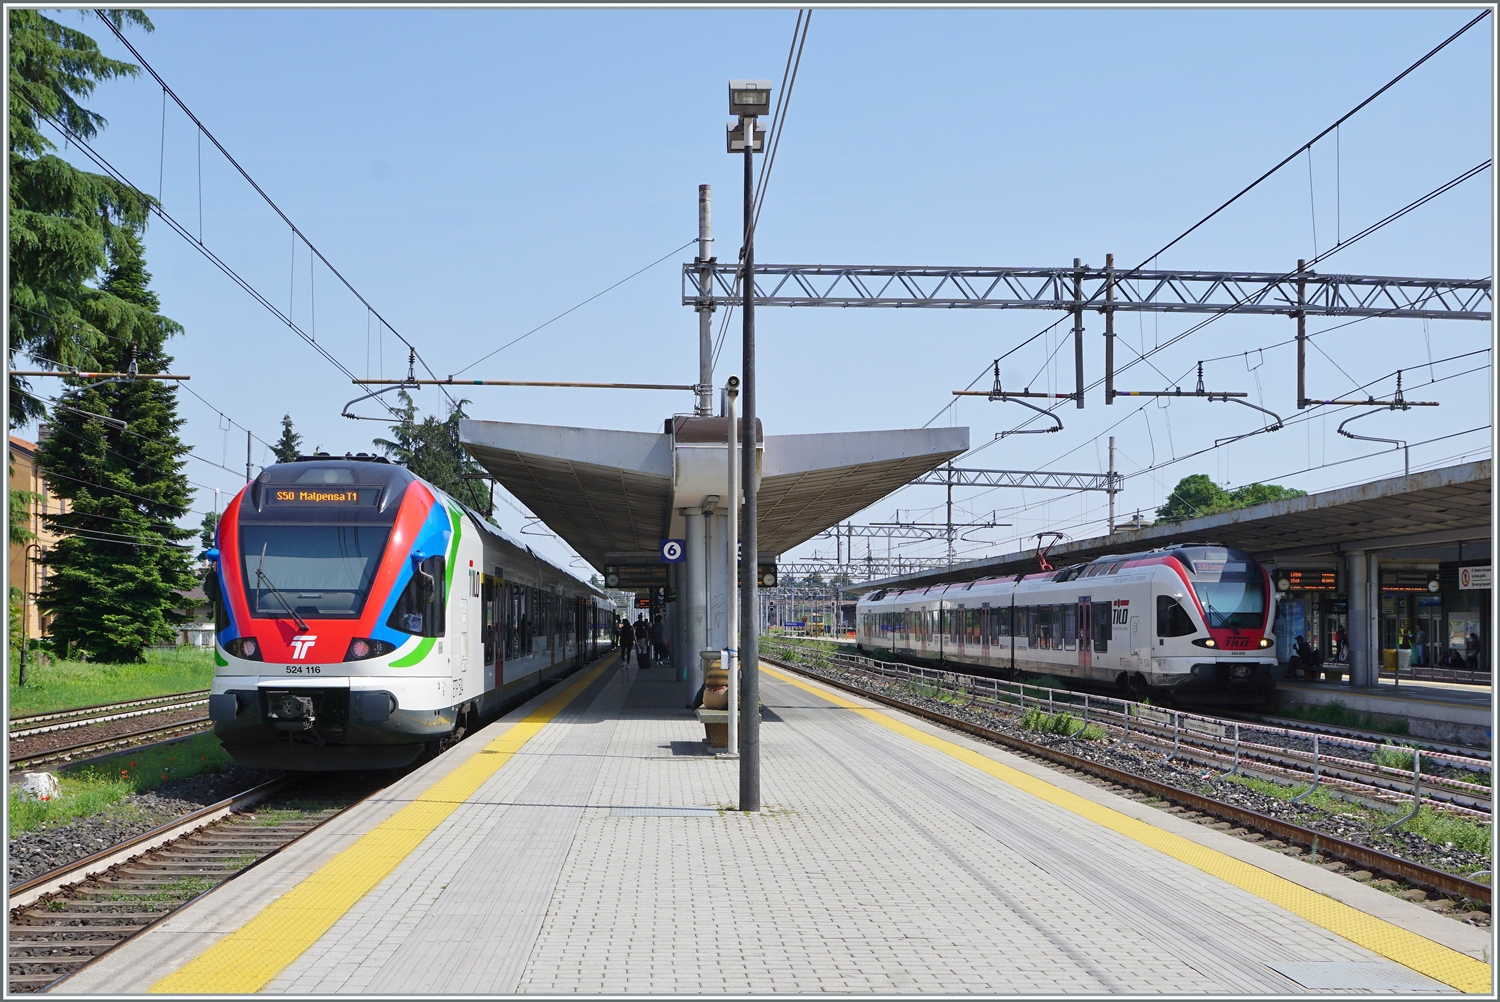 Gleich zwei SBB TILO Flirts zeigen sich in Gallarate: Links der RABe 524 116 in der aktuellen Farbgebung als S 50 von Bellinzona nach Malpensa Terminal 1 und rechts der RABe 524 002 in der älteren Farbgebung als S 30 nach Luino.

23. Mai 2023